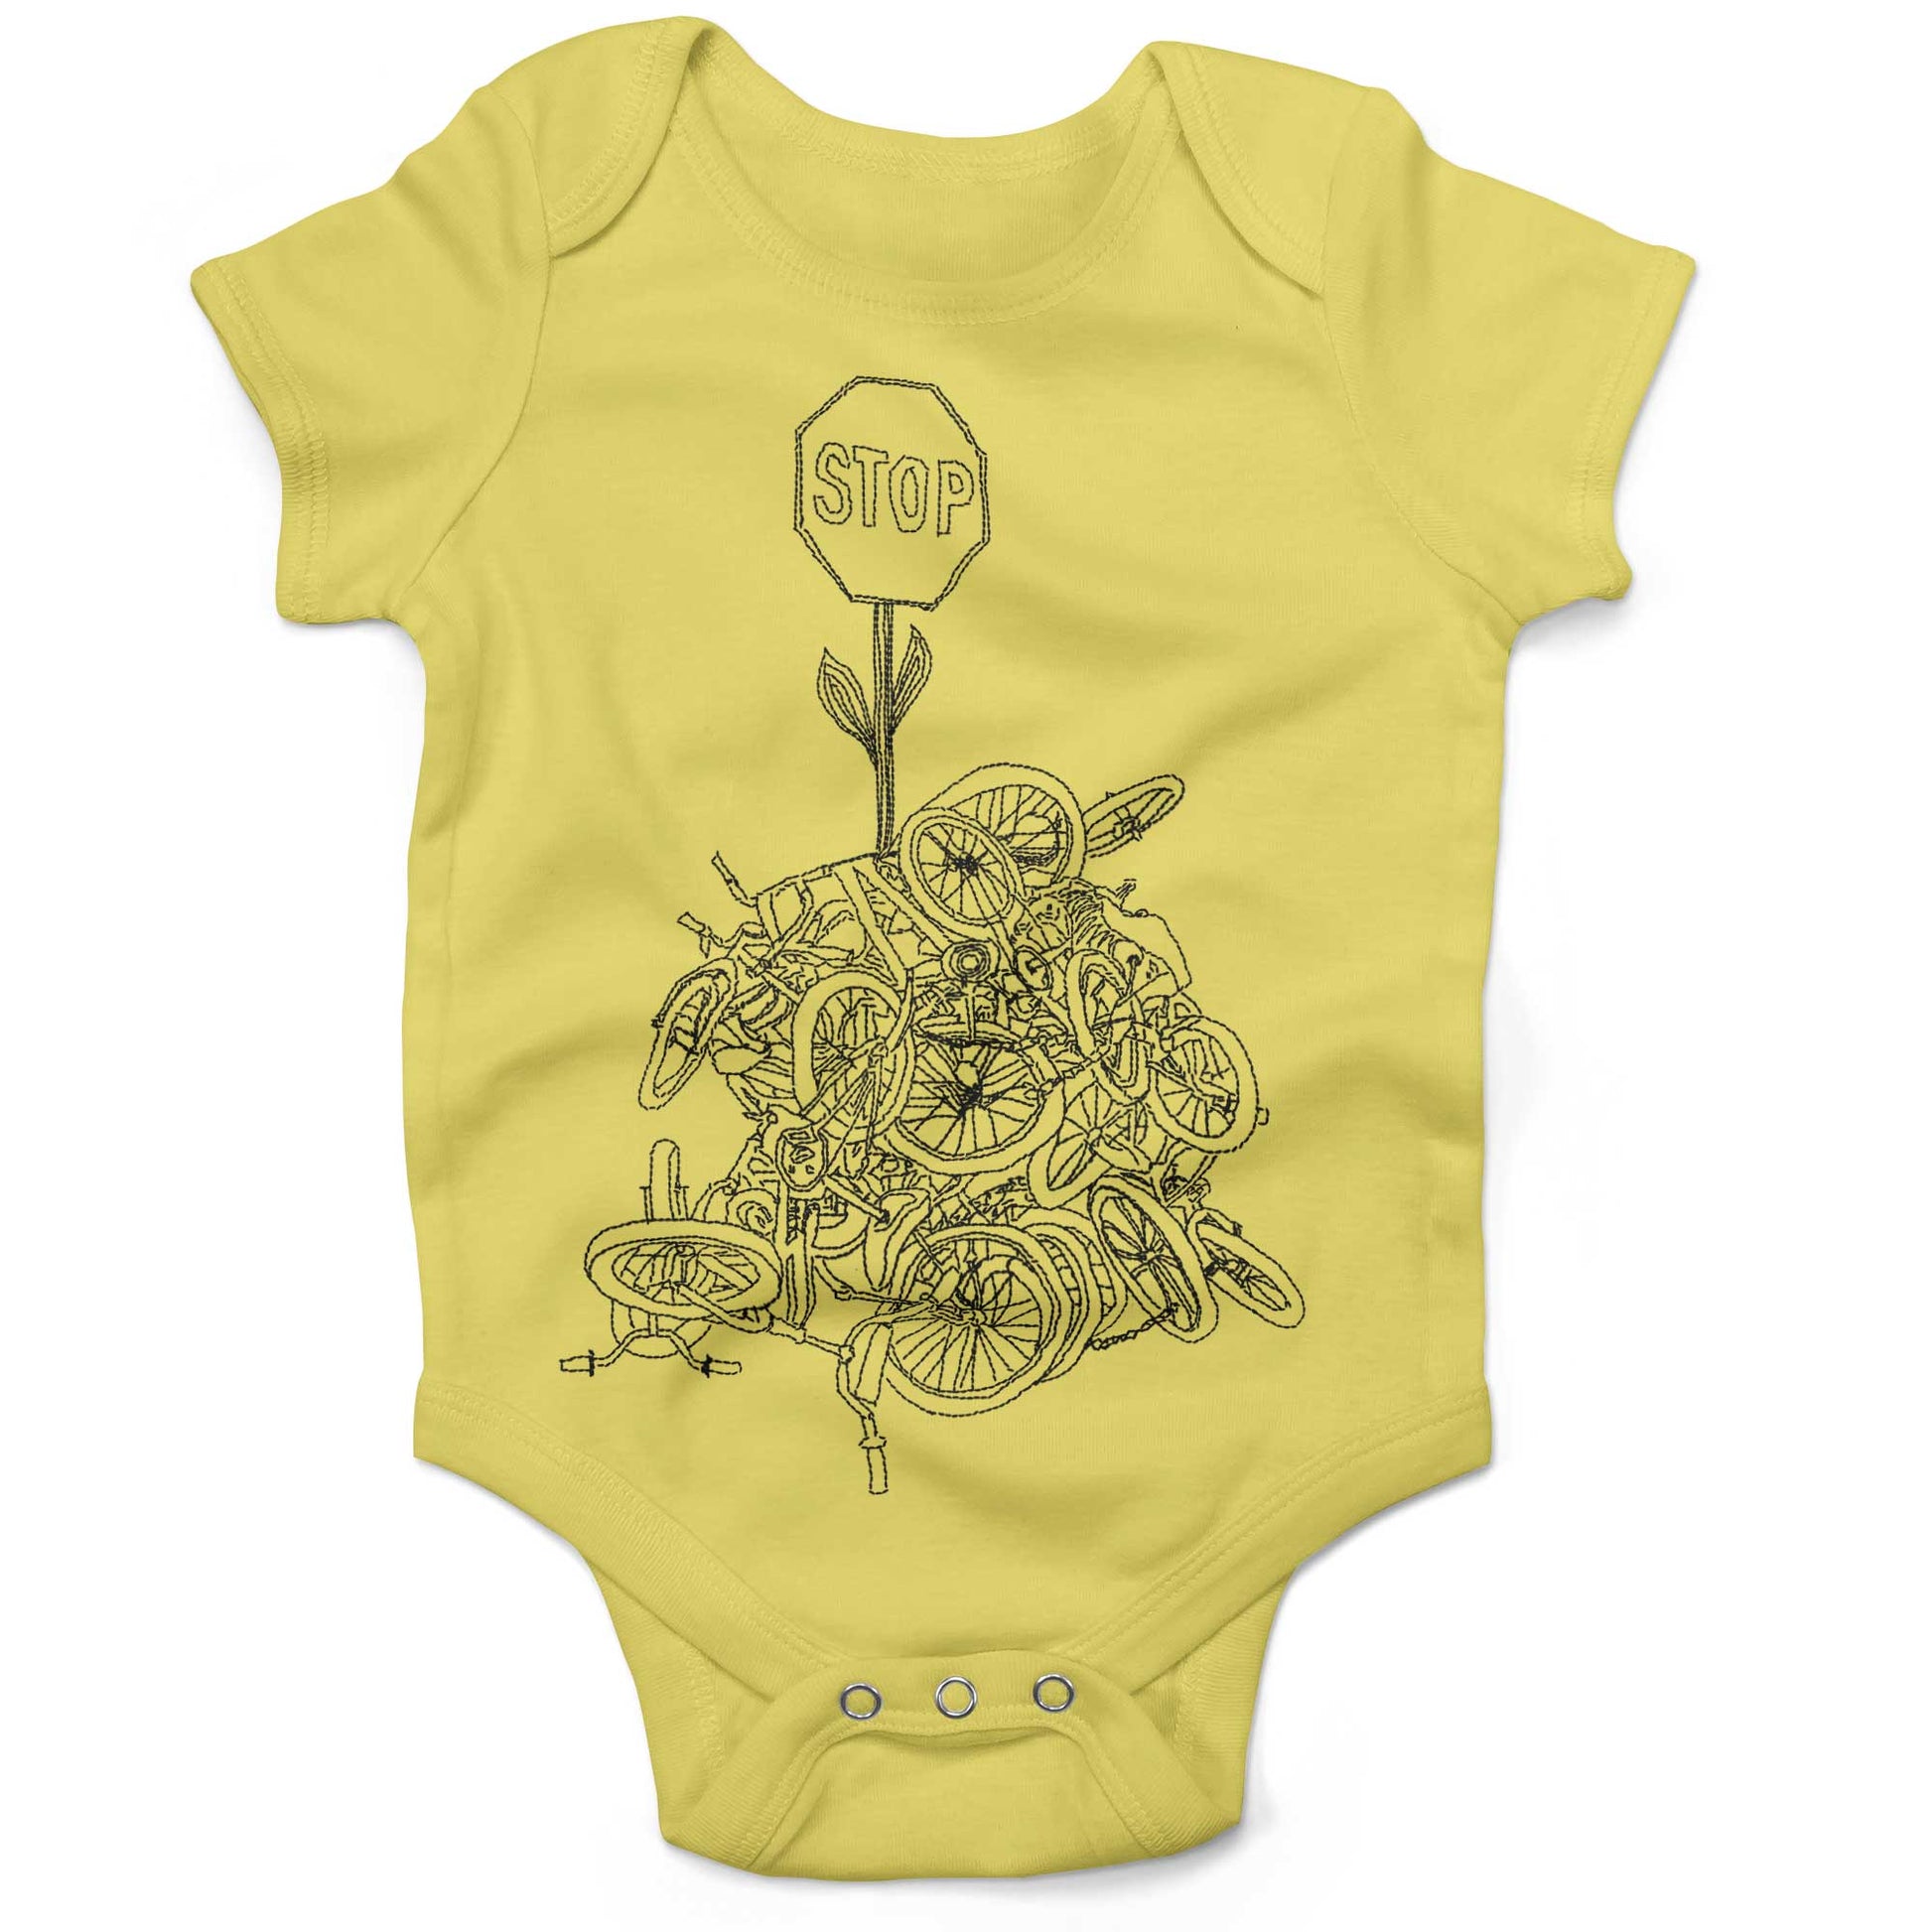 Zoobomber Bike Pyle Infant Bodysuit or Raglan Baby Tee-Yellow-3-6 months